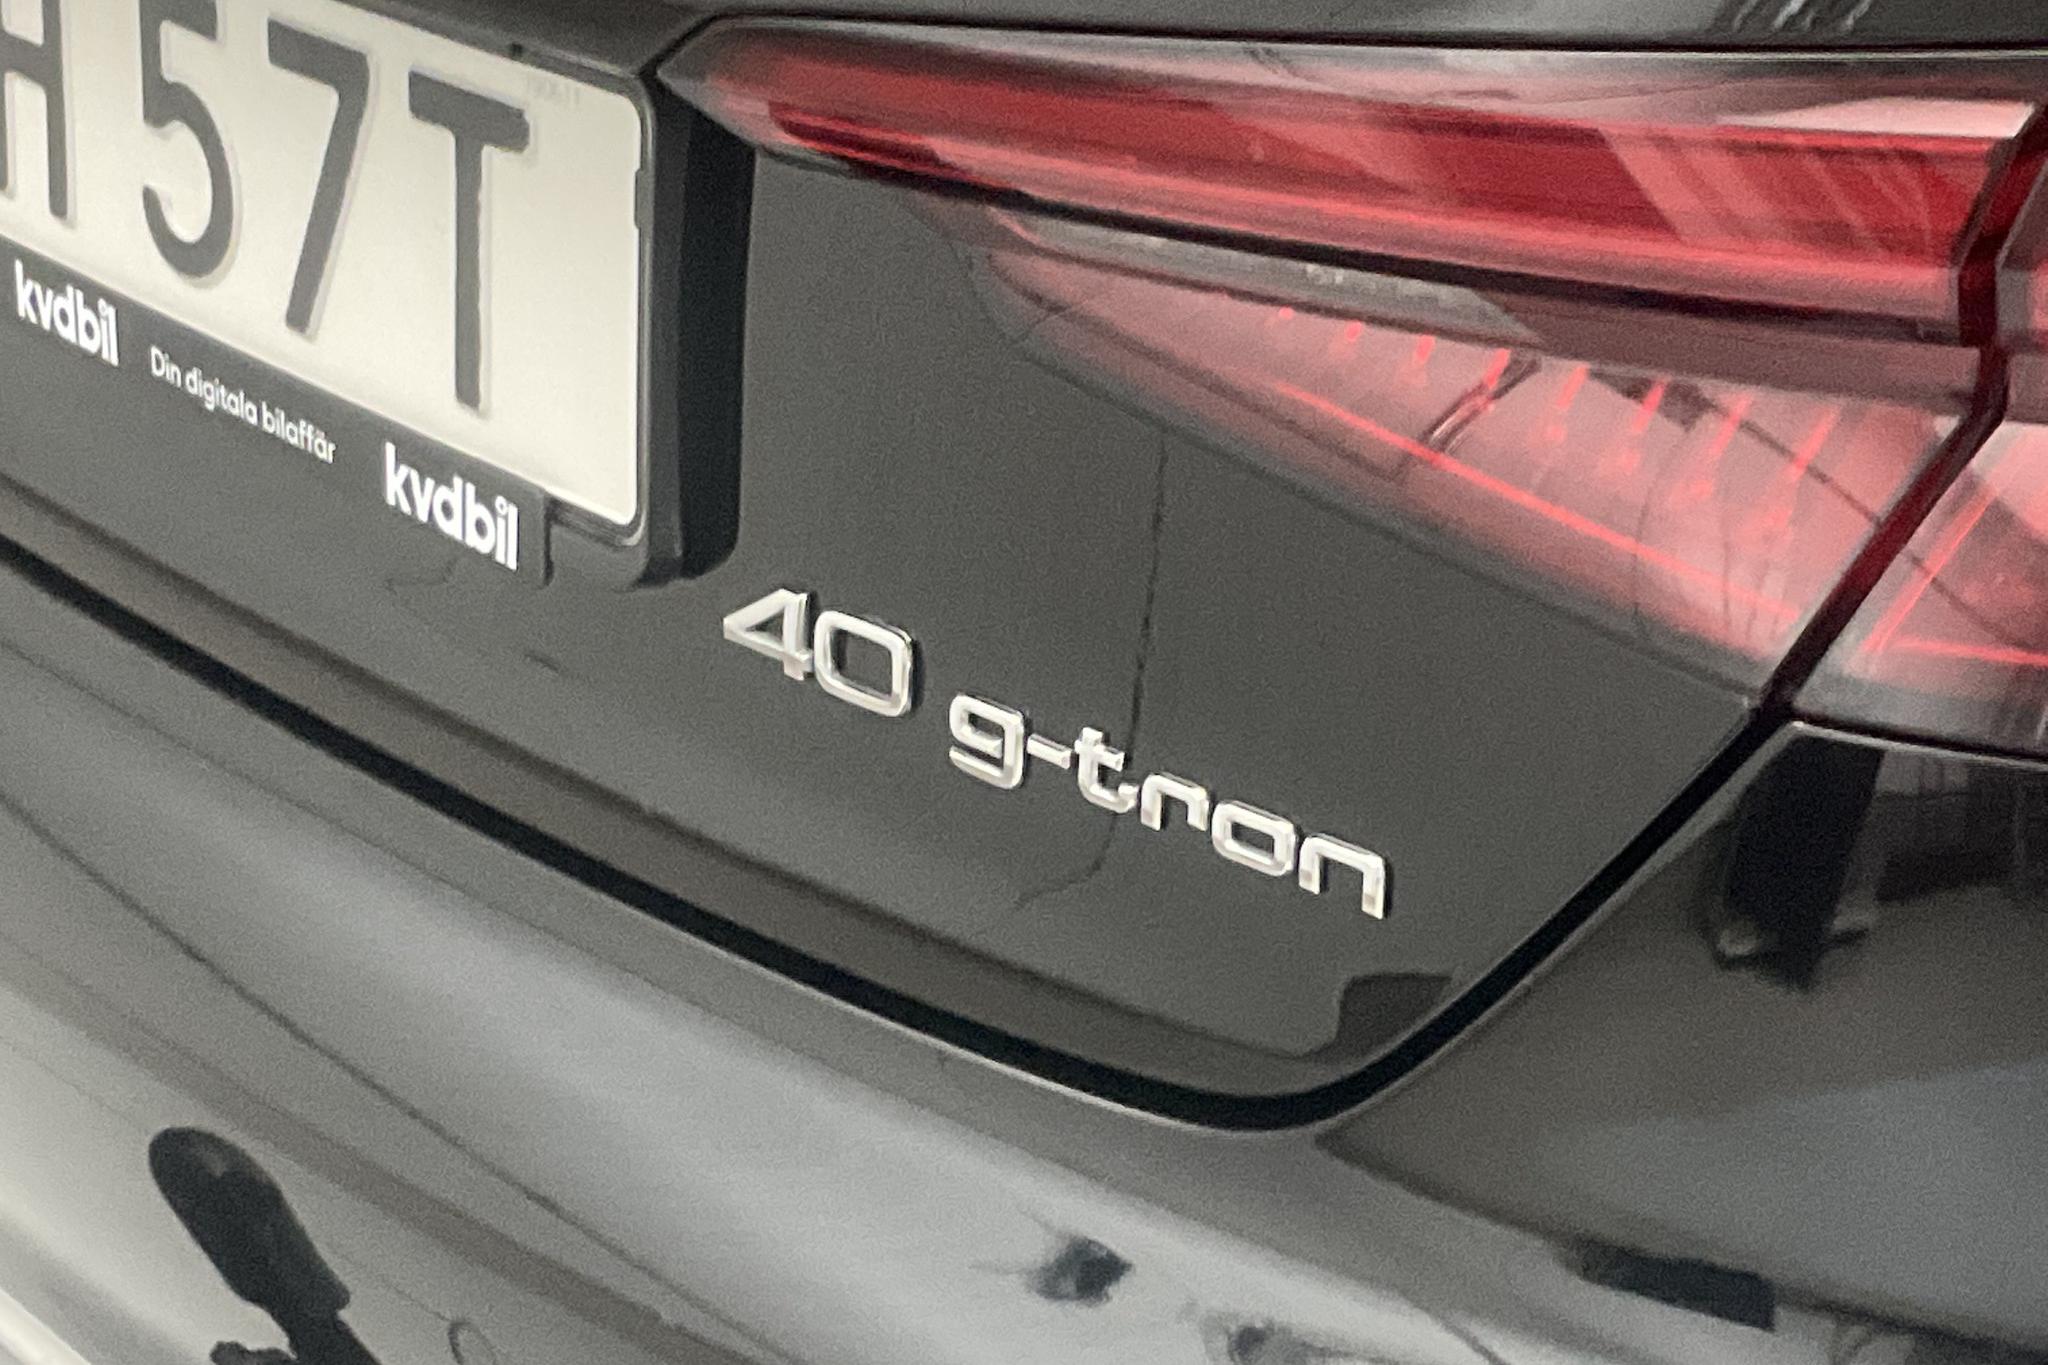 Audi A5 Sportback TFSI g-tron (170hk) - 103 110 km - Automatic - black - 2019